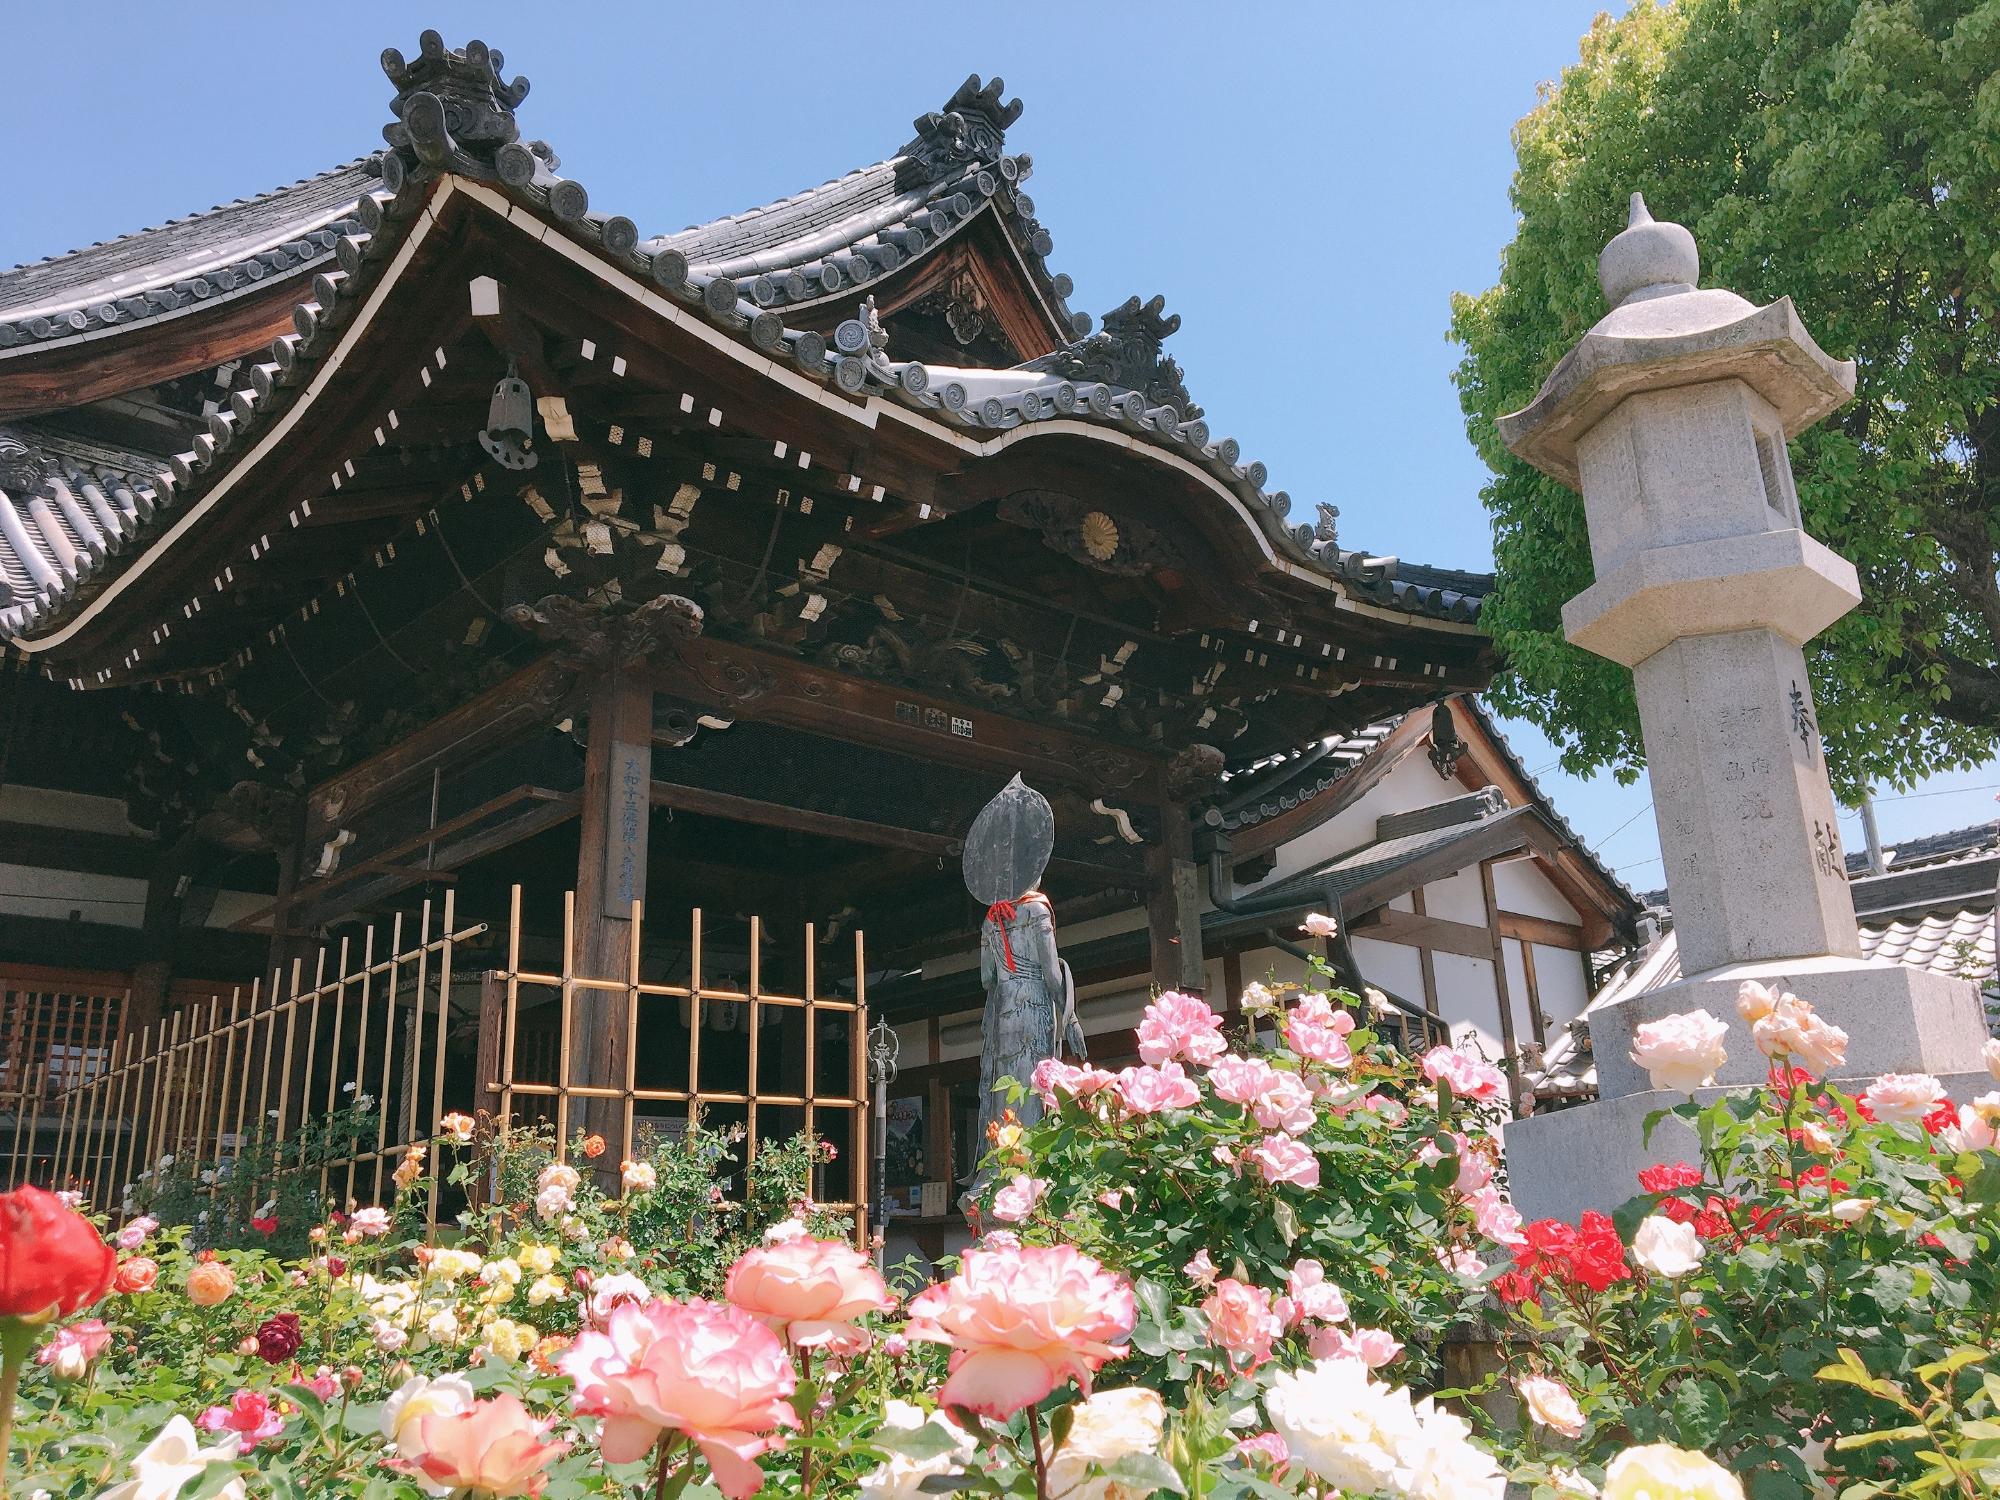 観音寺を背景に、たくさんのバラの花が咲いている様子の写真